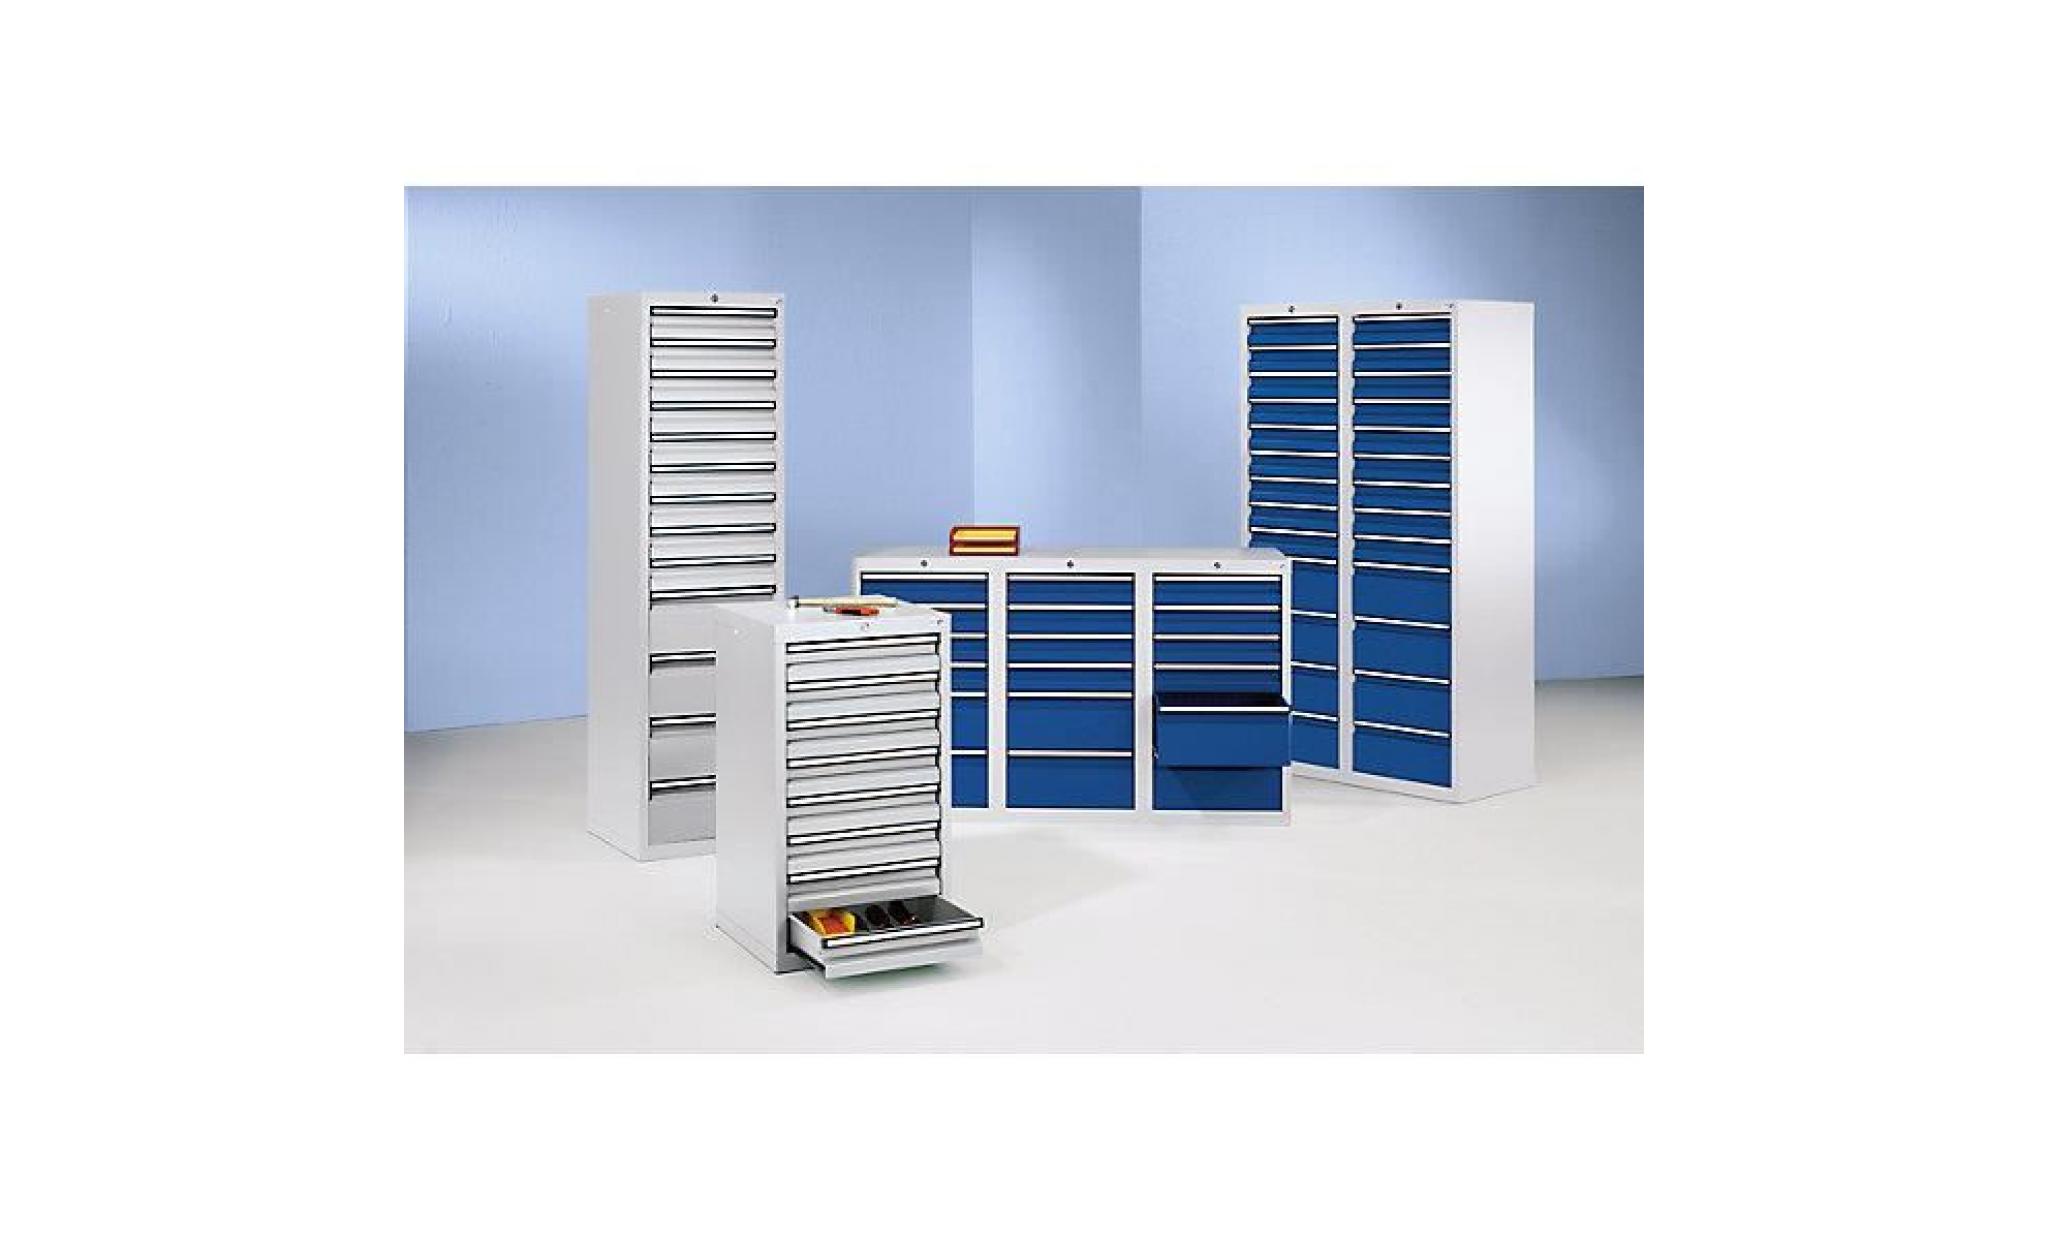 armoire à tiroirs   h x l x p 900 x 500 x 500 mm, 8 tiroirs hauteur 100 mm   corps et tiroirs gris   armoire armoires armoire pas cher